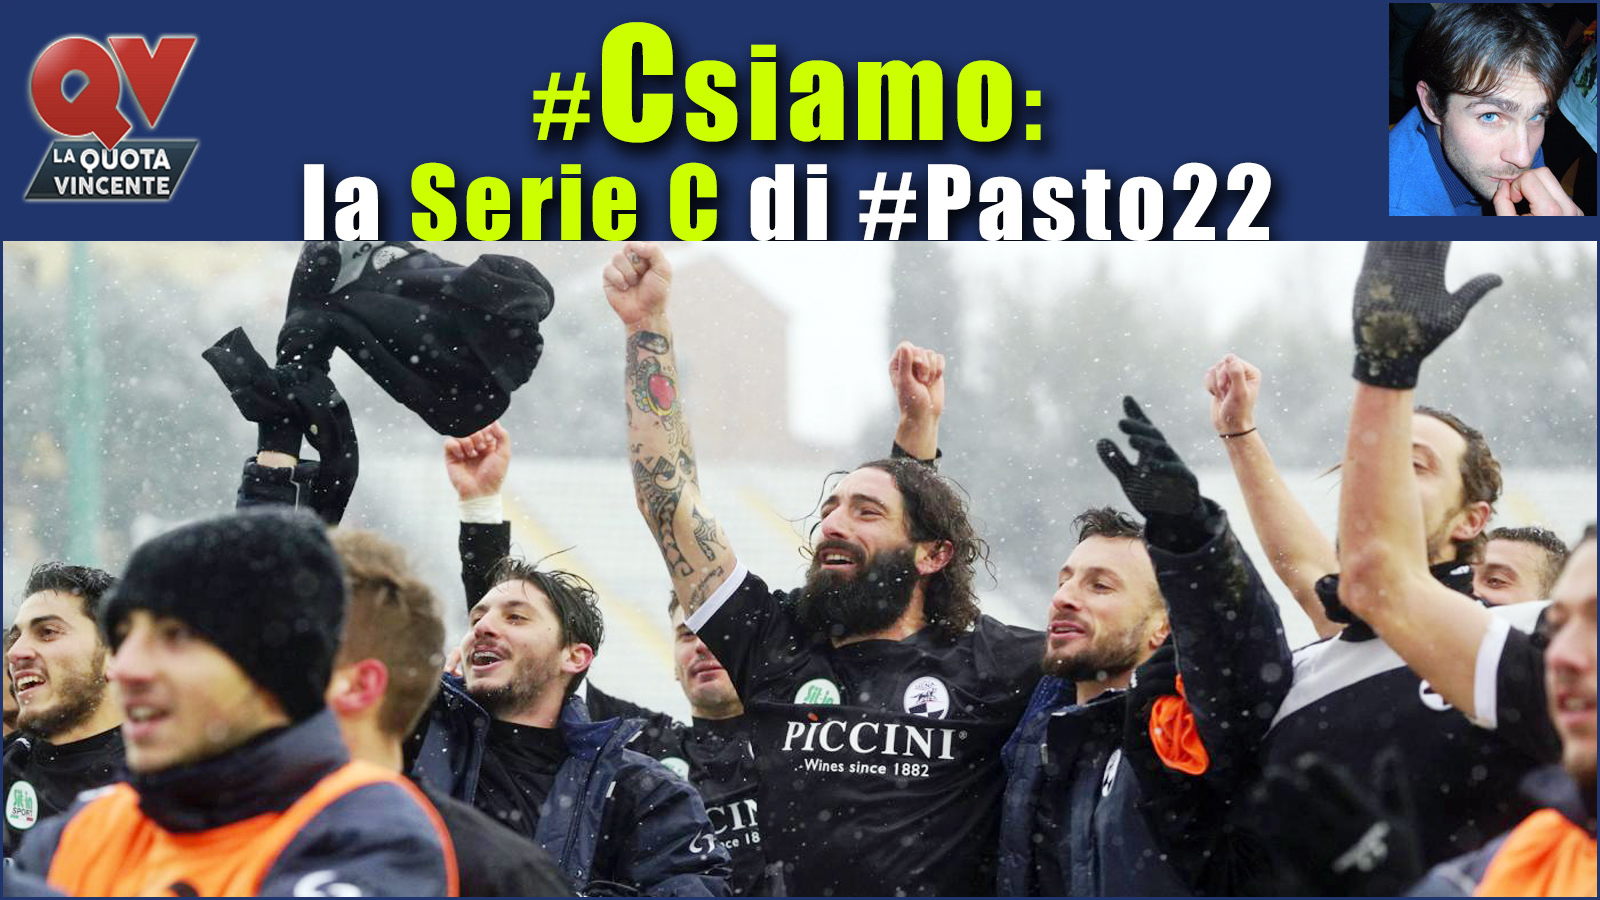 Pronostici Serie C sabato 3 marzo: #Csiamo, il blog di #Pasto22